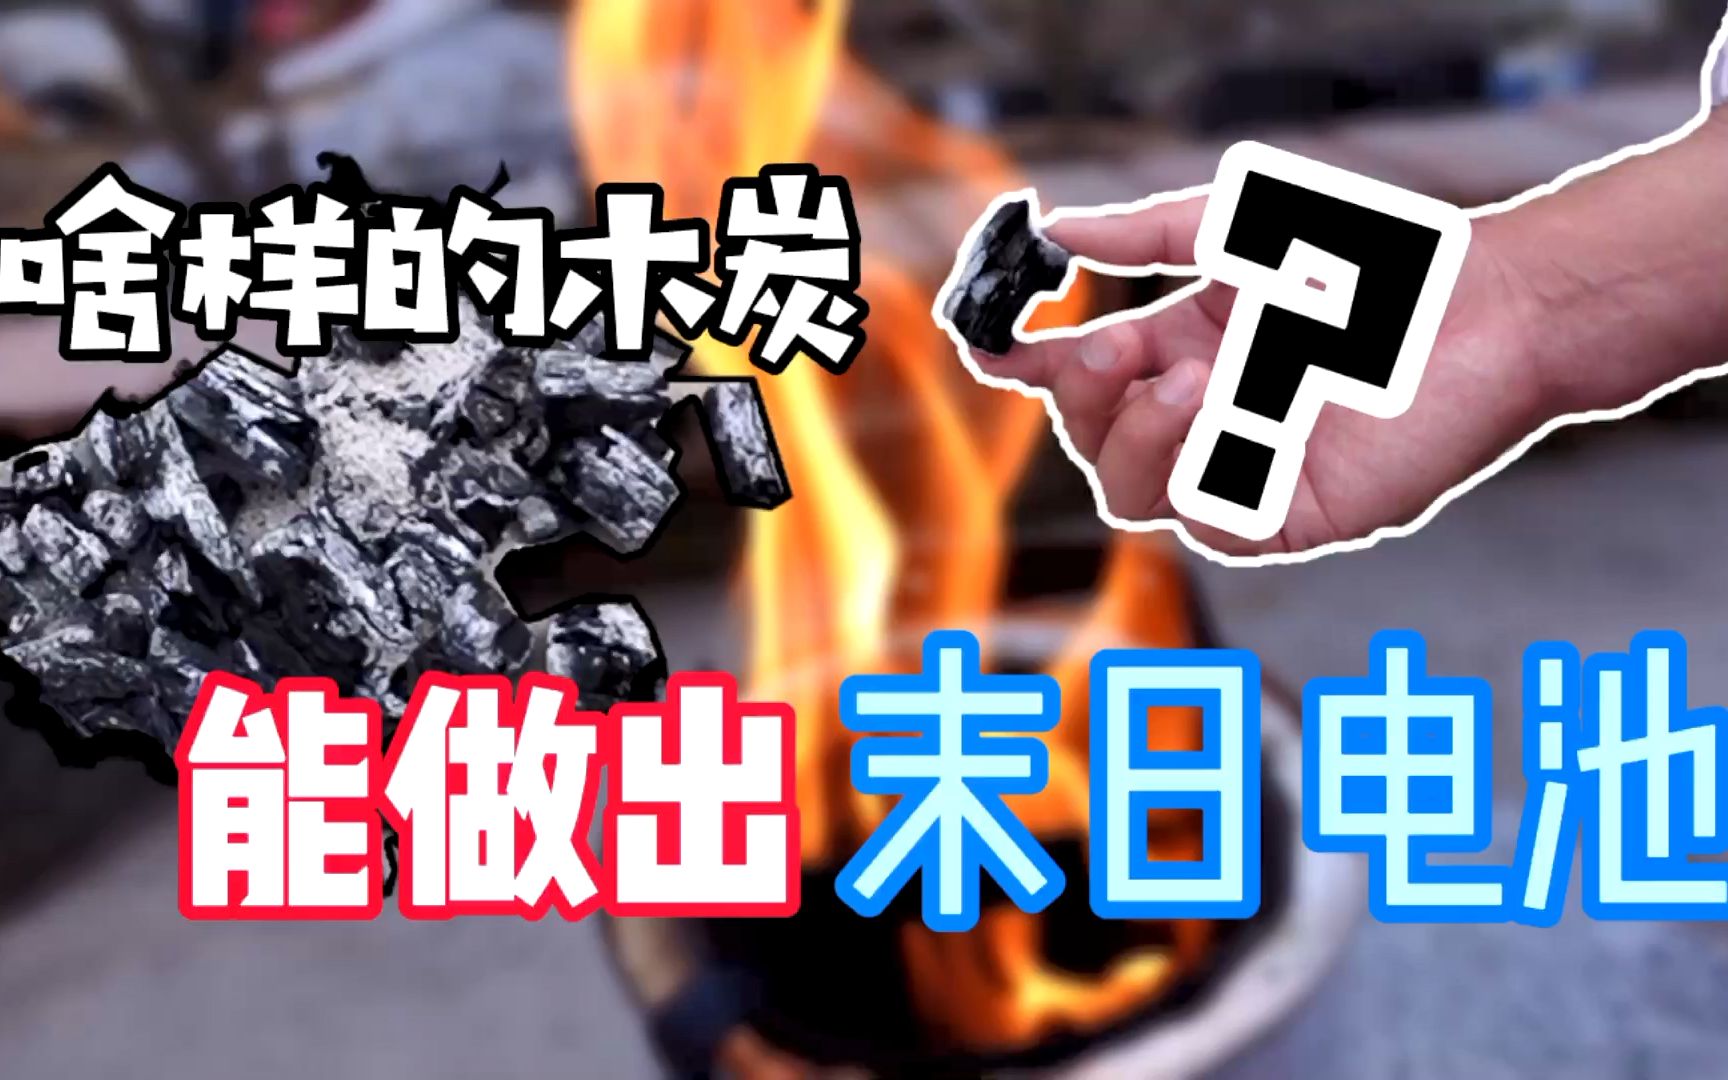 网上说，这样烧出来的木炭，能做出“末日电池”？